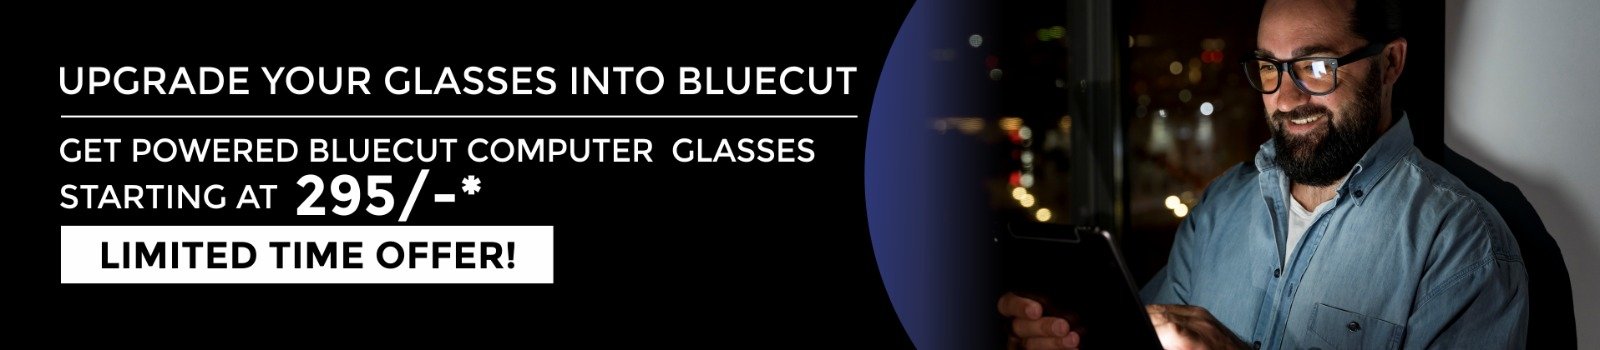 blue cut offer banner